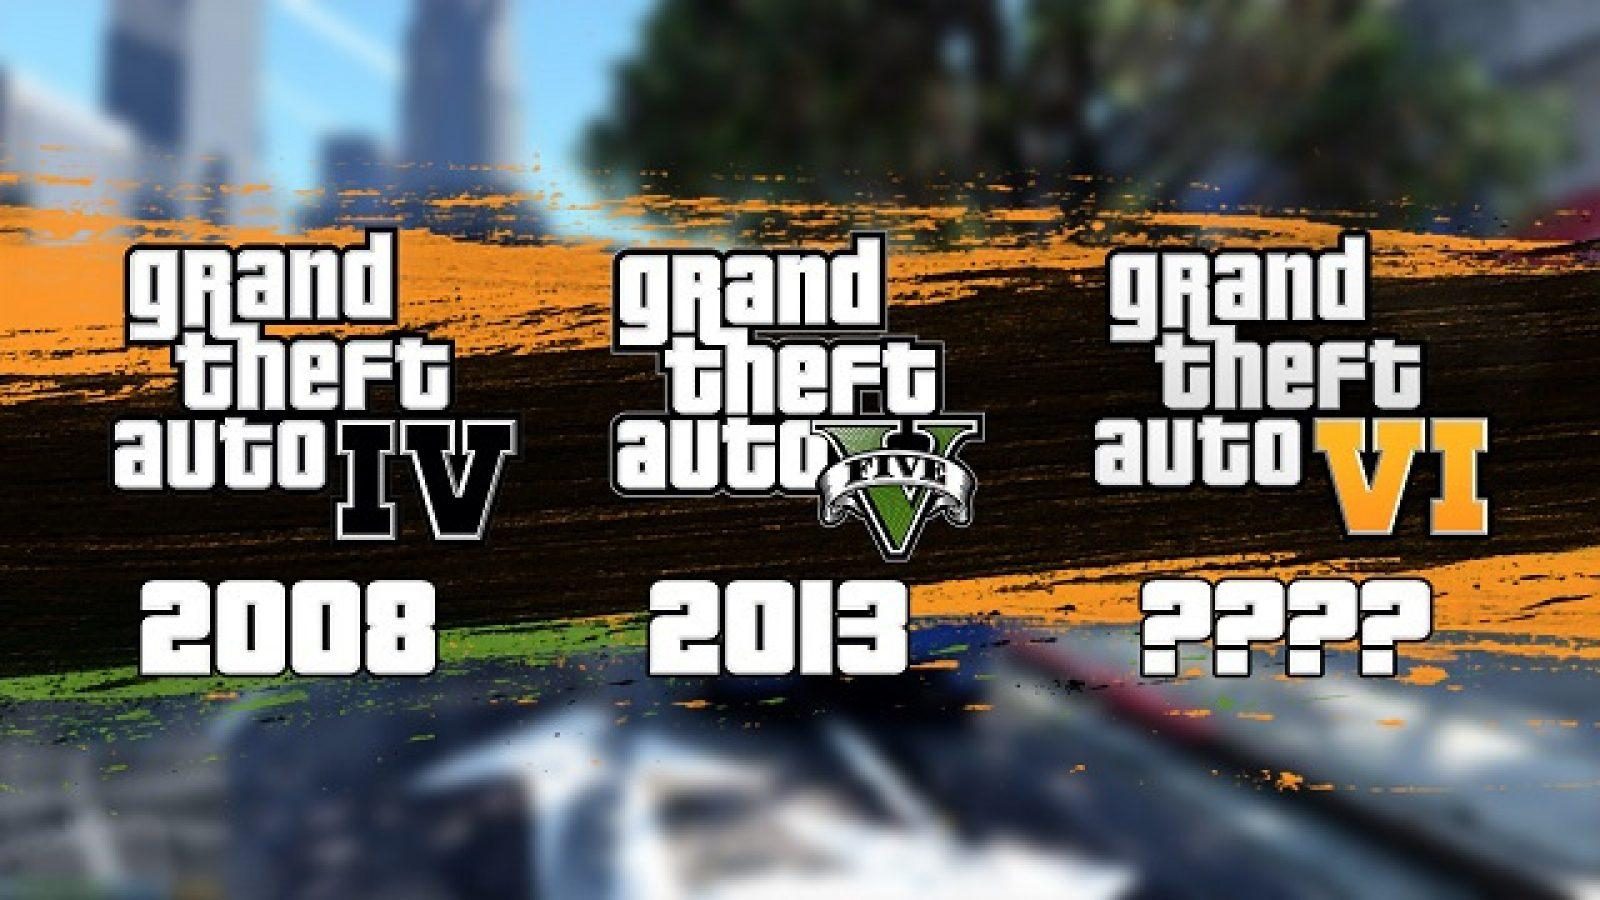 Date D Sortie Gta 6 Ps3 Quand GTA 6 sera-t-il publié ? Comparaison des Grand Theft Auto précédents  - Dexerto.fr